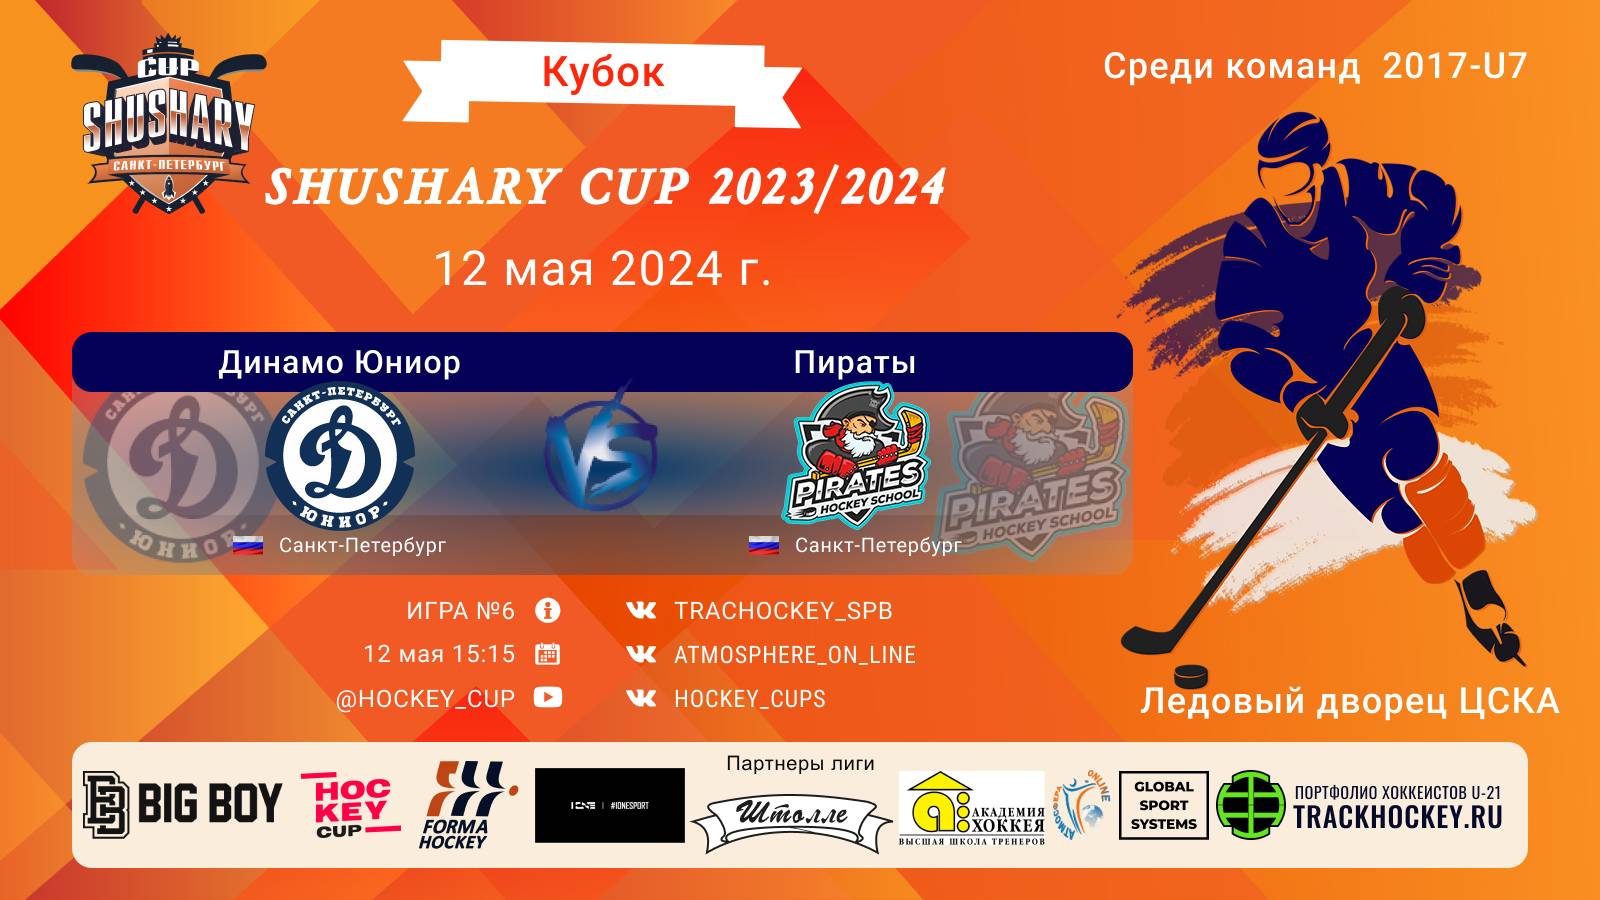 ХК "Динамо Юниор" - ХК "Пираты"/КУБОК SHUSHARY CUP, 12-05-2024 15:15